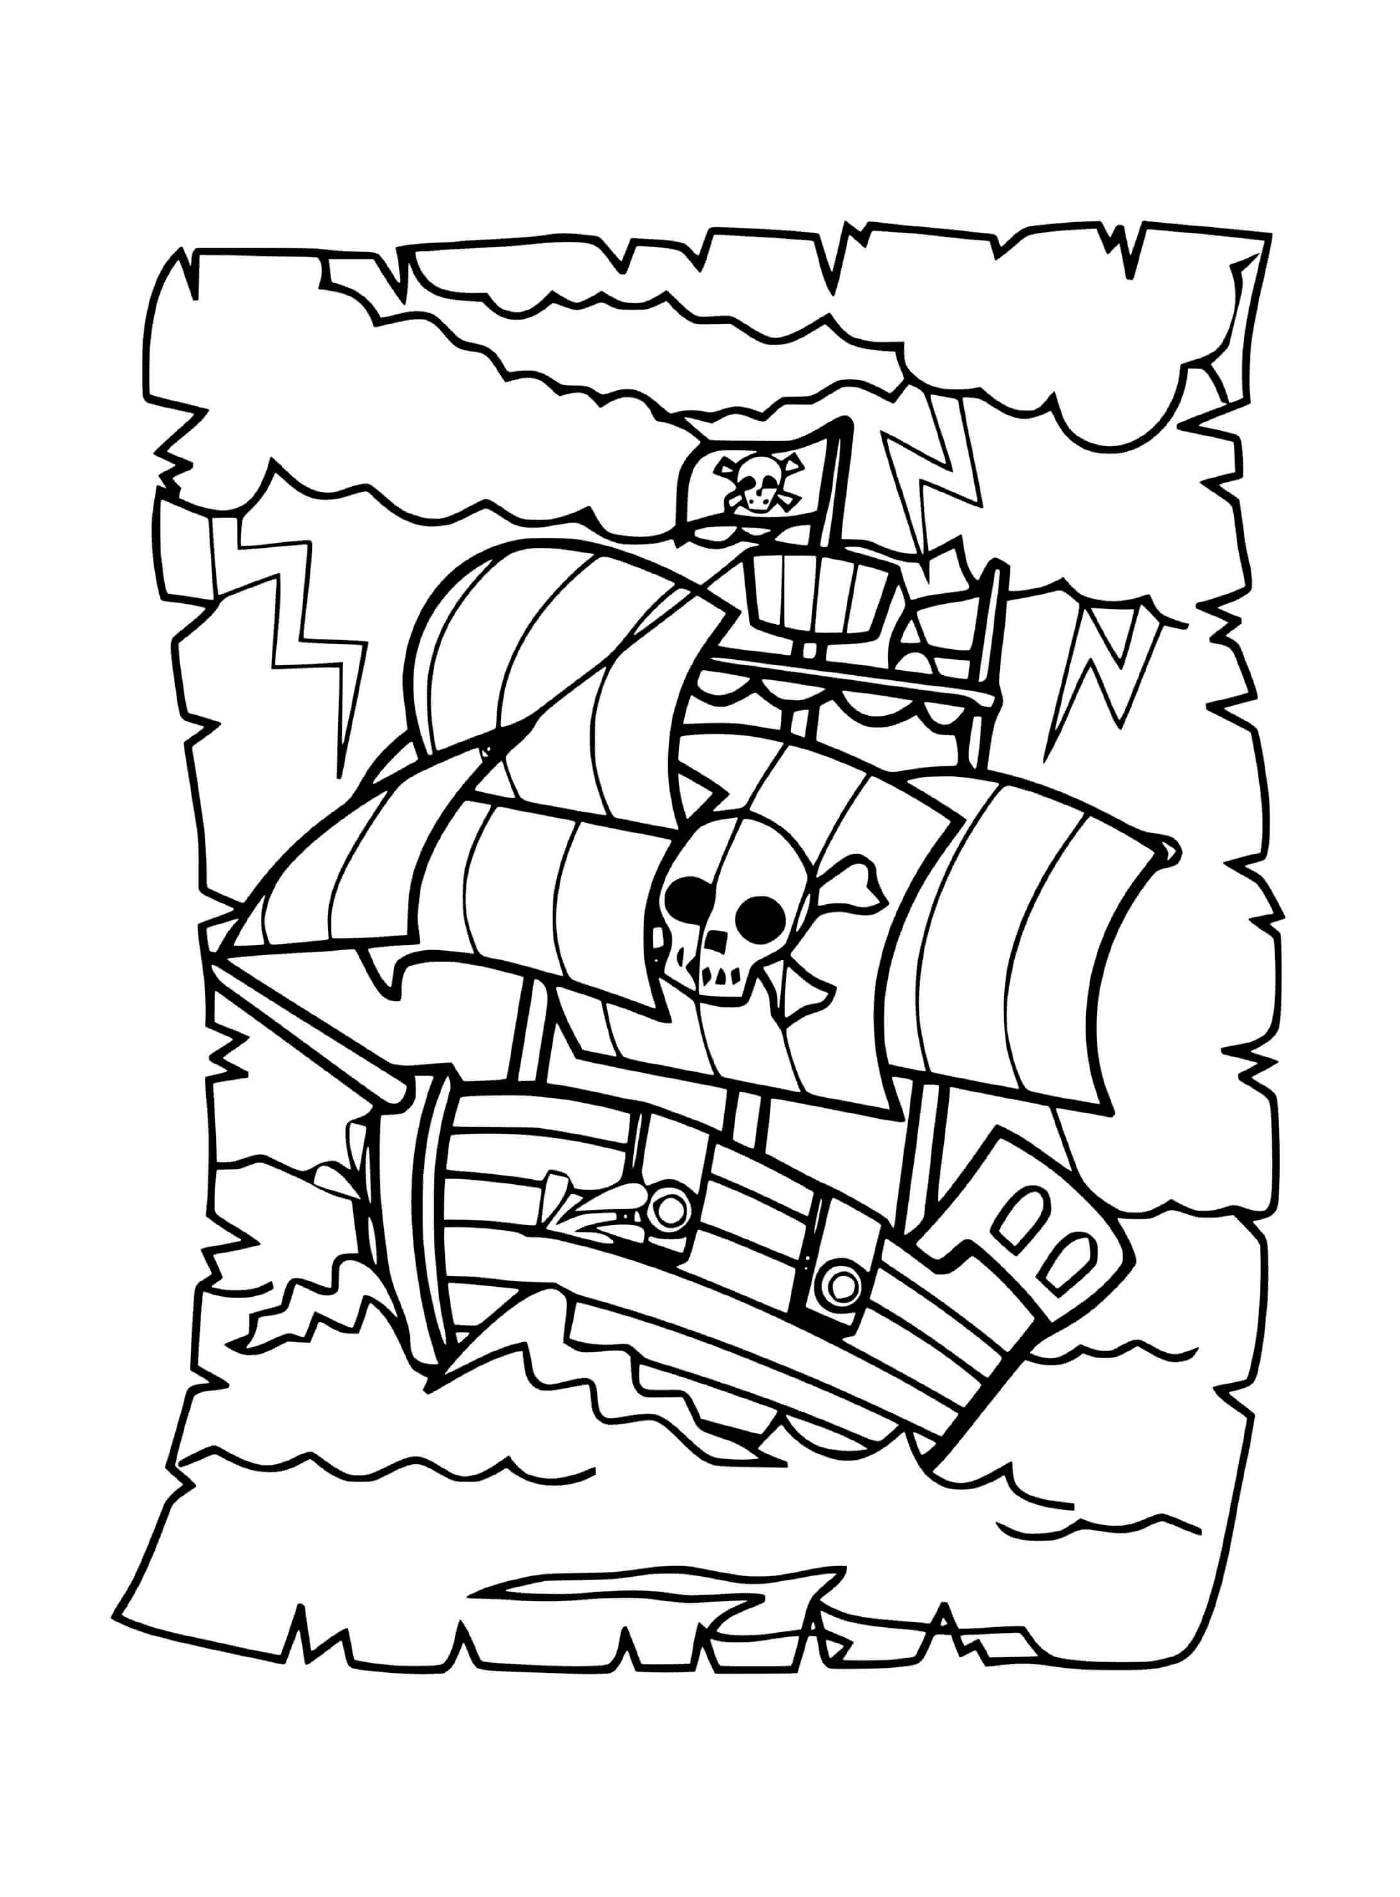  Pirata, barco cruzando ondas intensas 